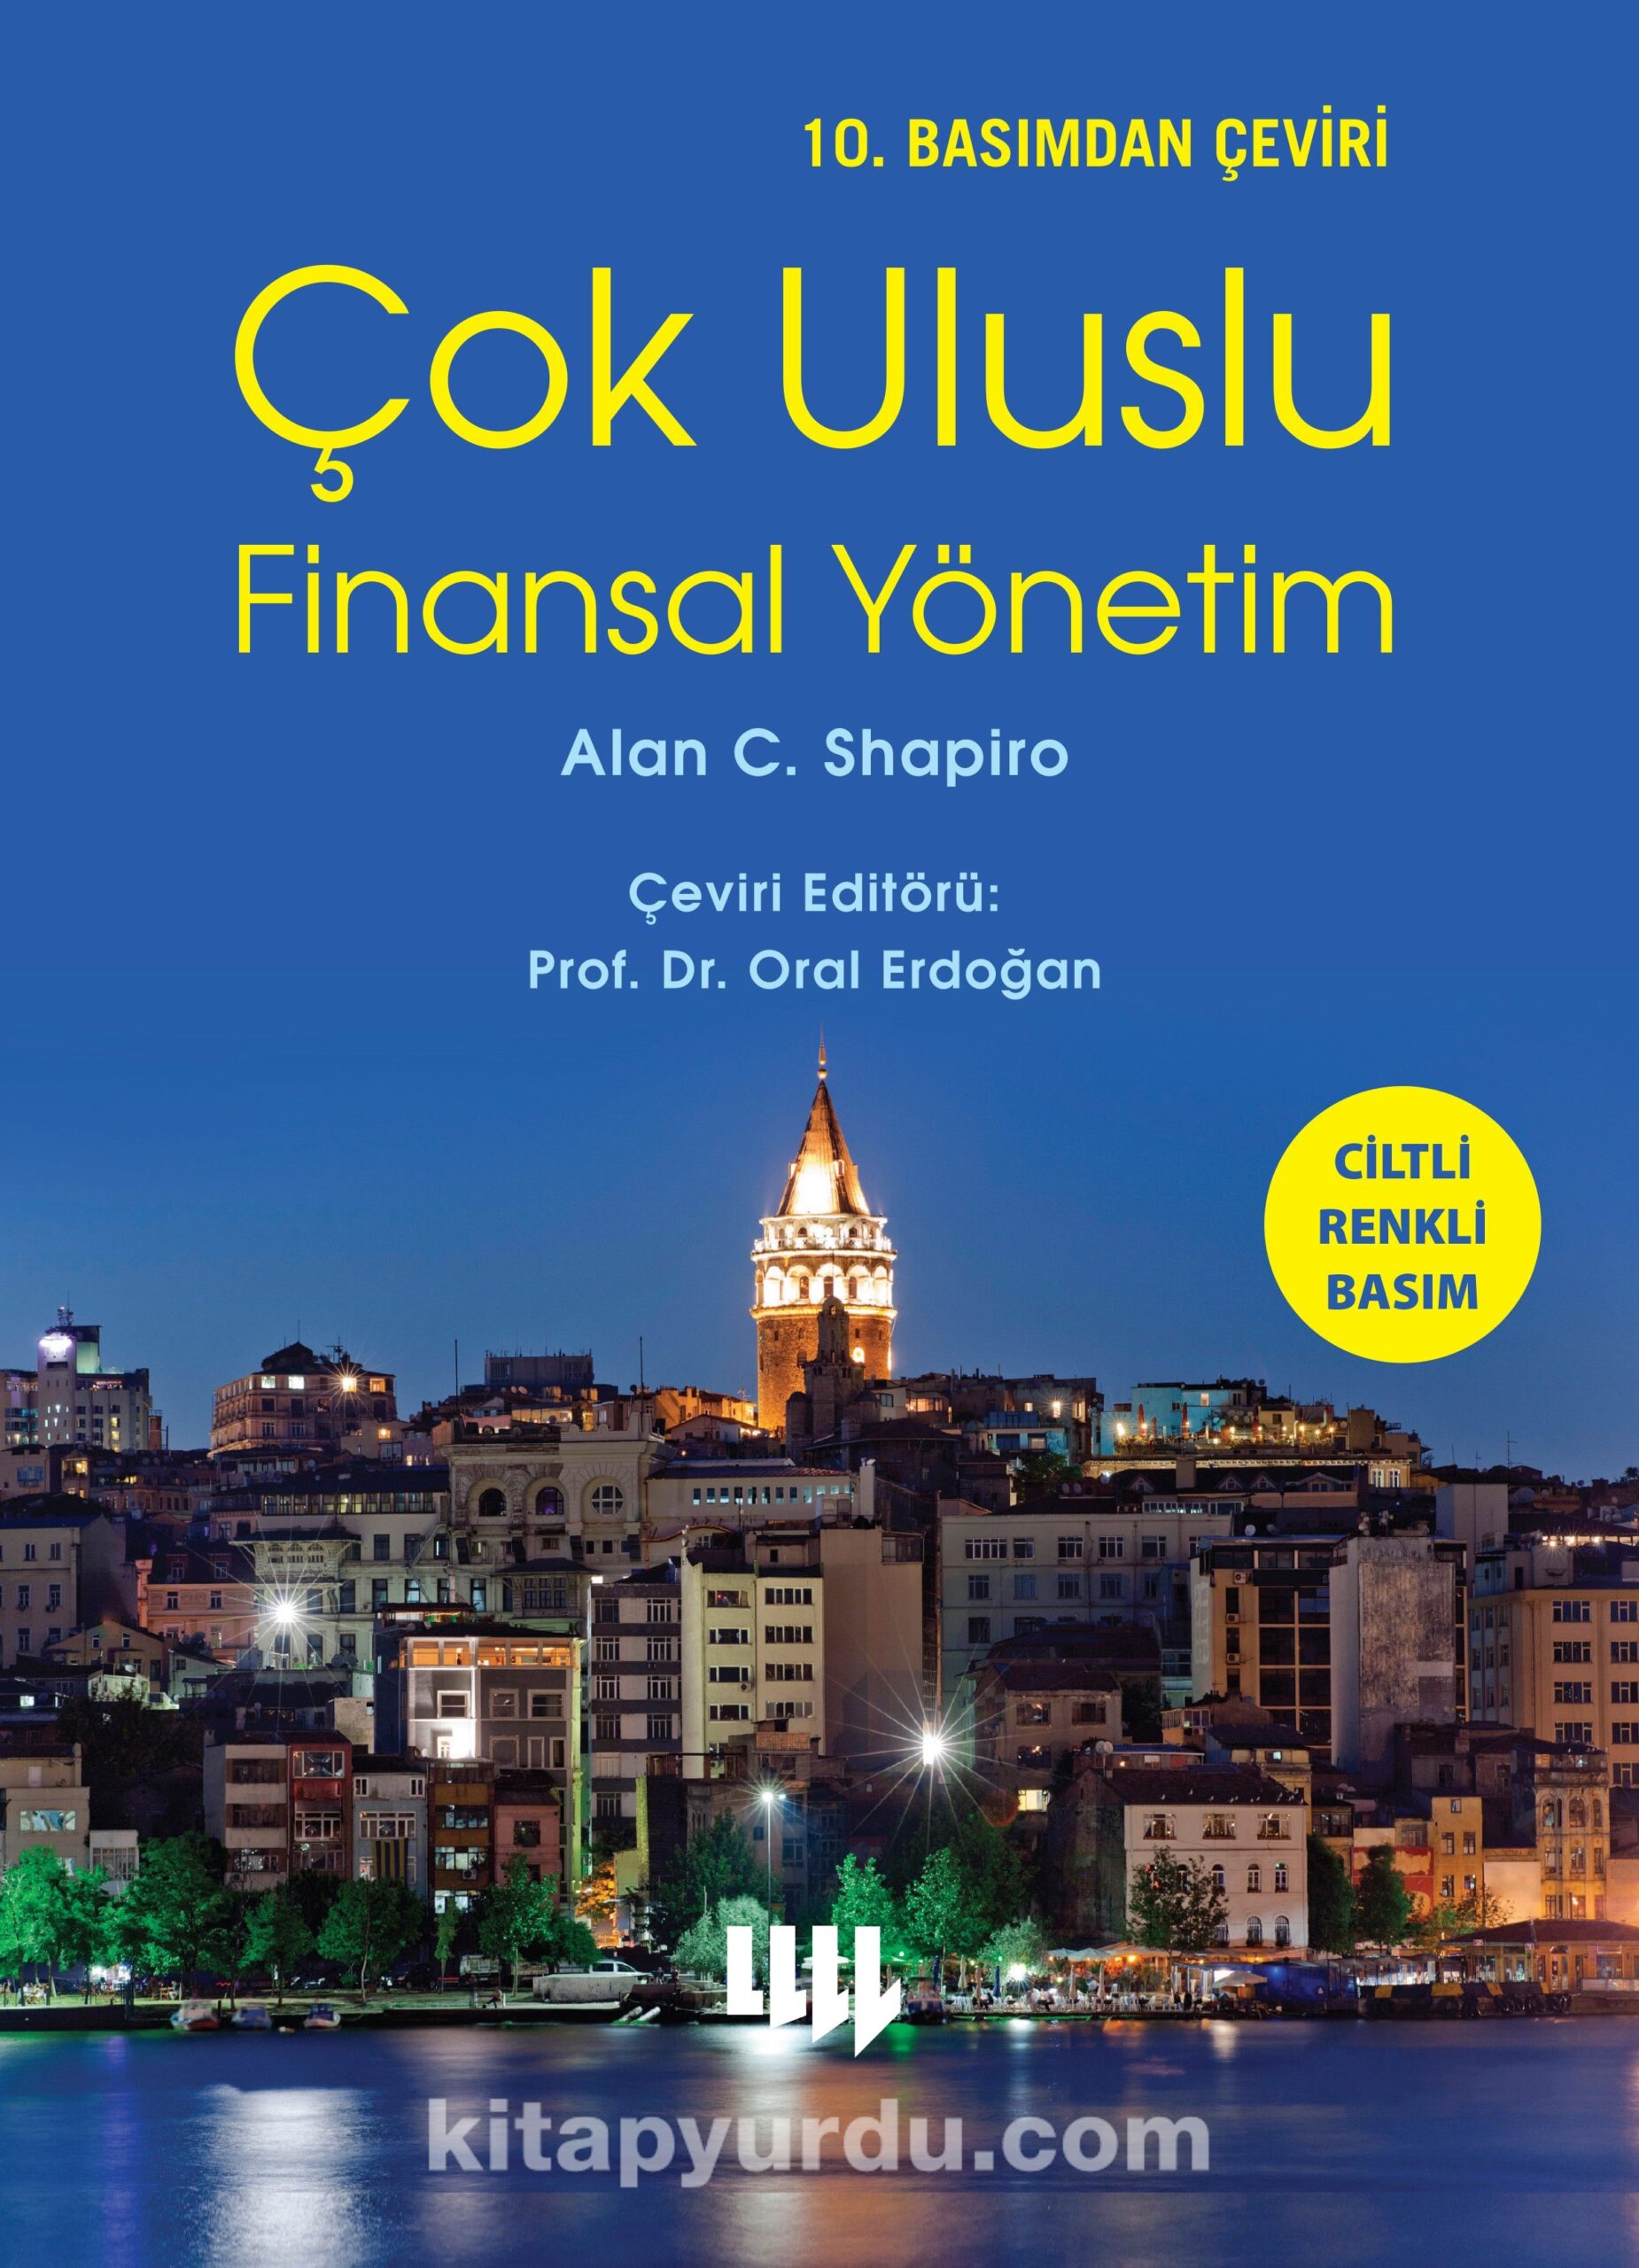 Çok Uluslu Finansal Yönetim (10.Basımdan Çeviri Ciltli Renkli Basım)